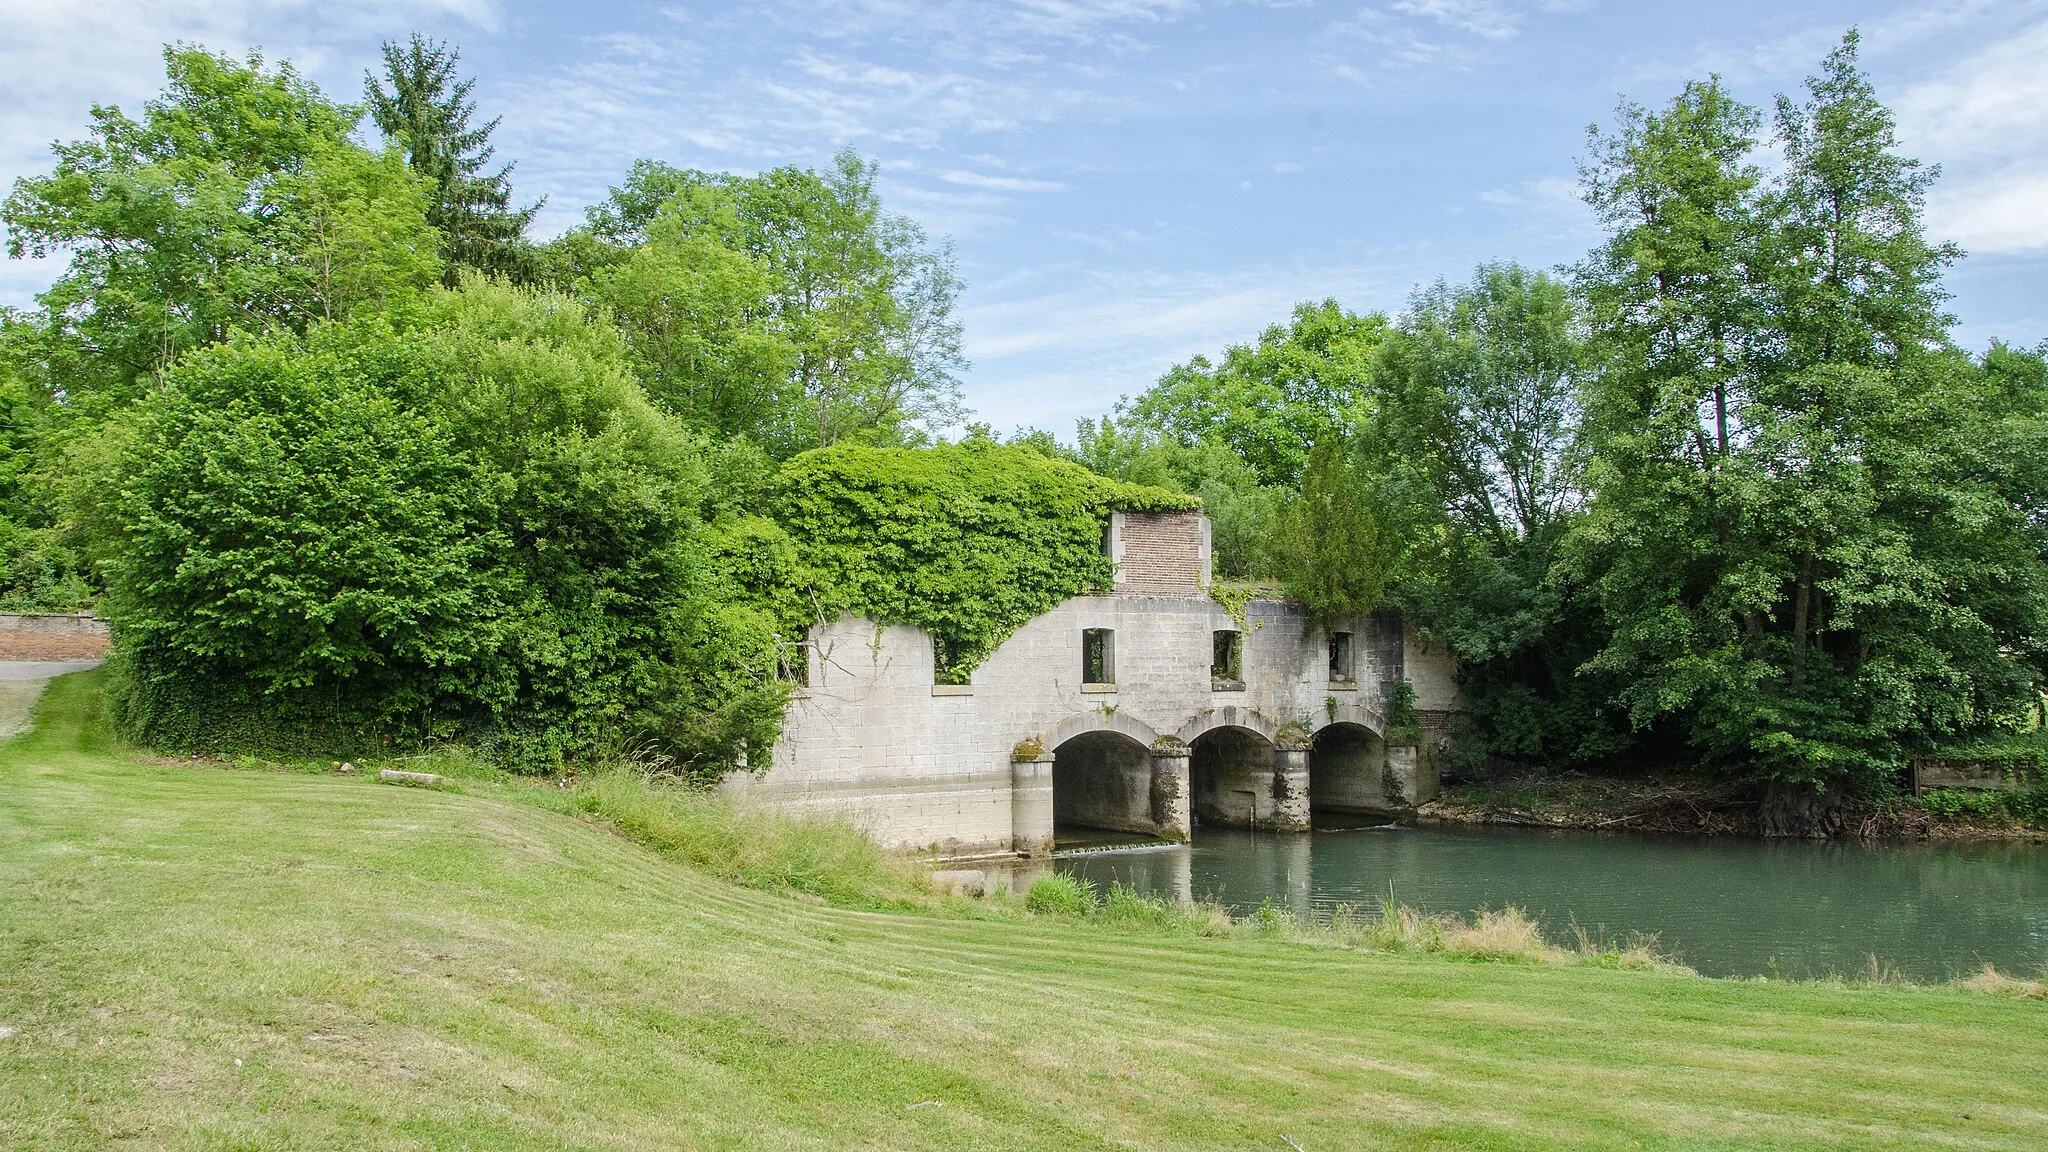 Photo showing: À la fin du XIXe siècle, une minoterie fut installée au bout du village de Ramerupt sur le petit cours d'eau "Le puits".

Fun Fact, les restes du rez-de-chaussée fut transformé en jardin par un voisin.